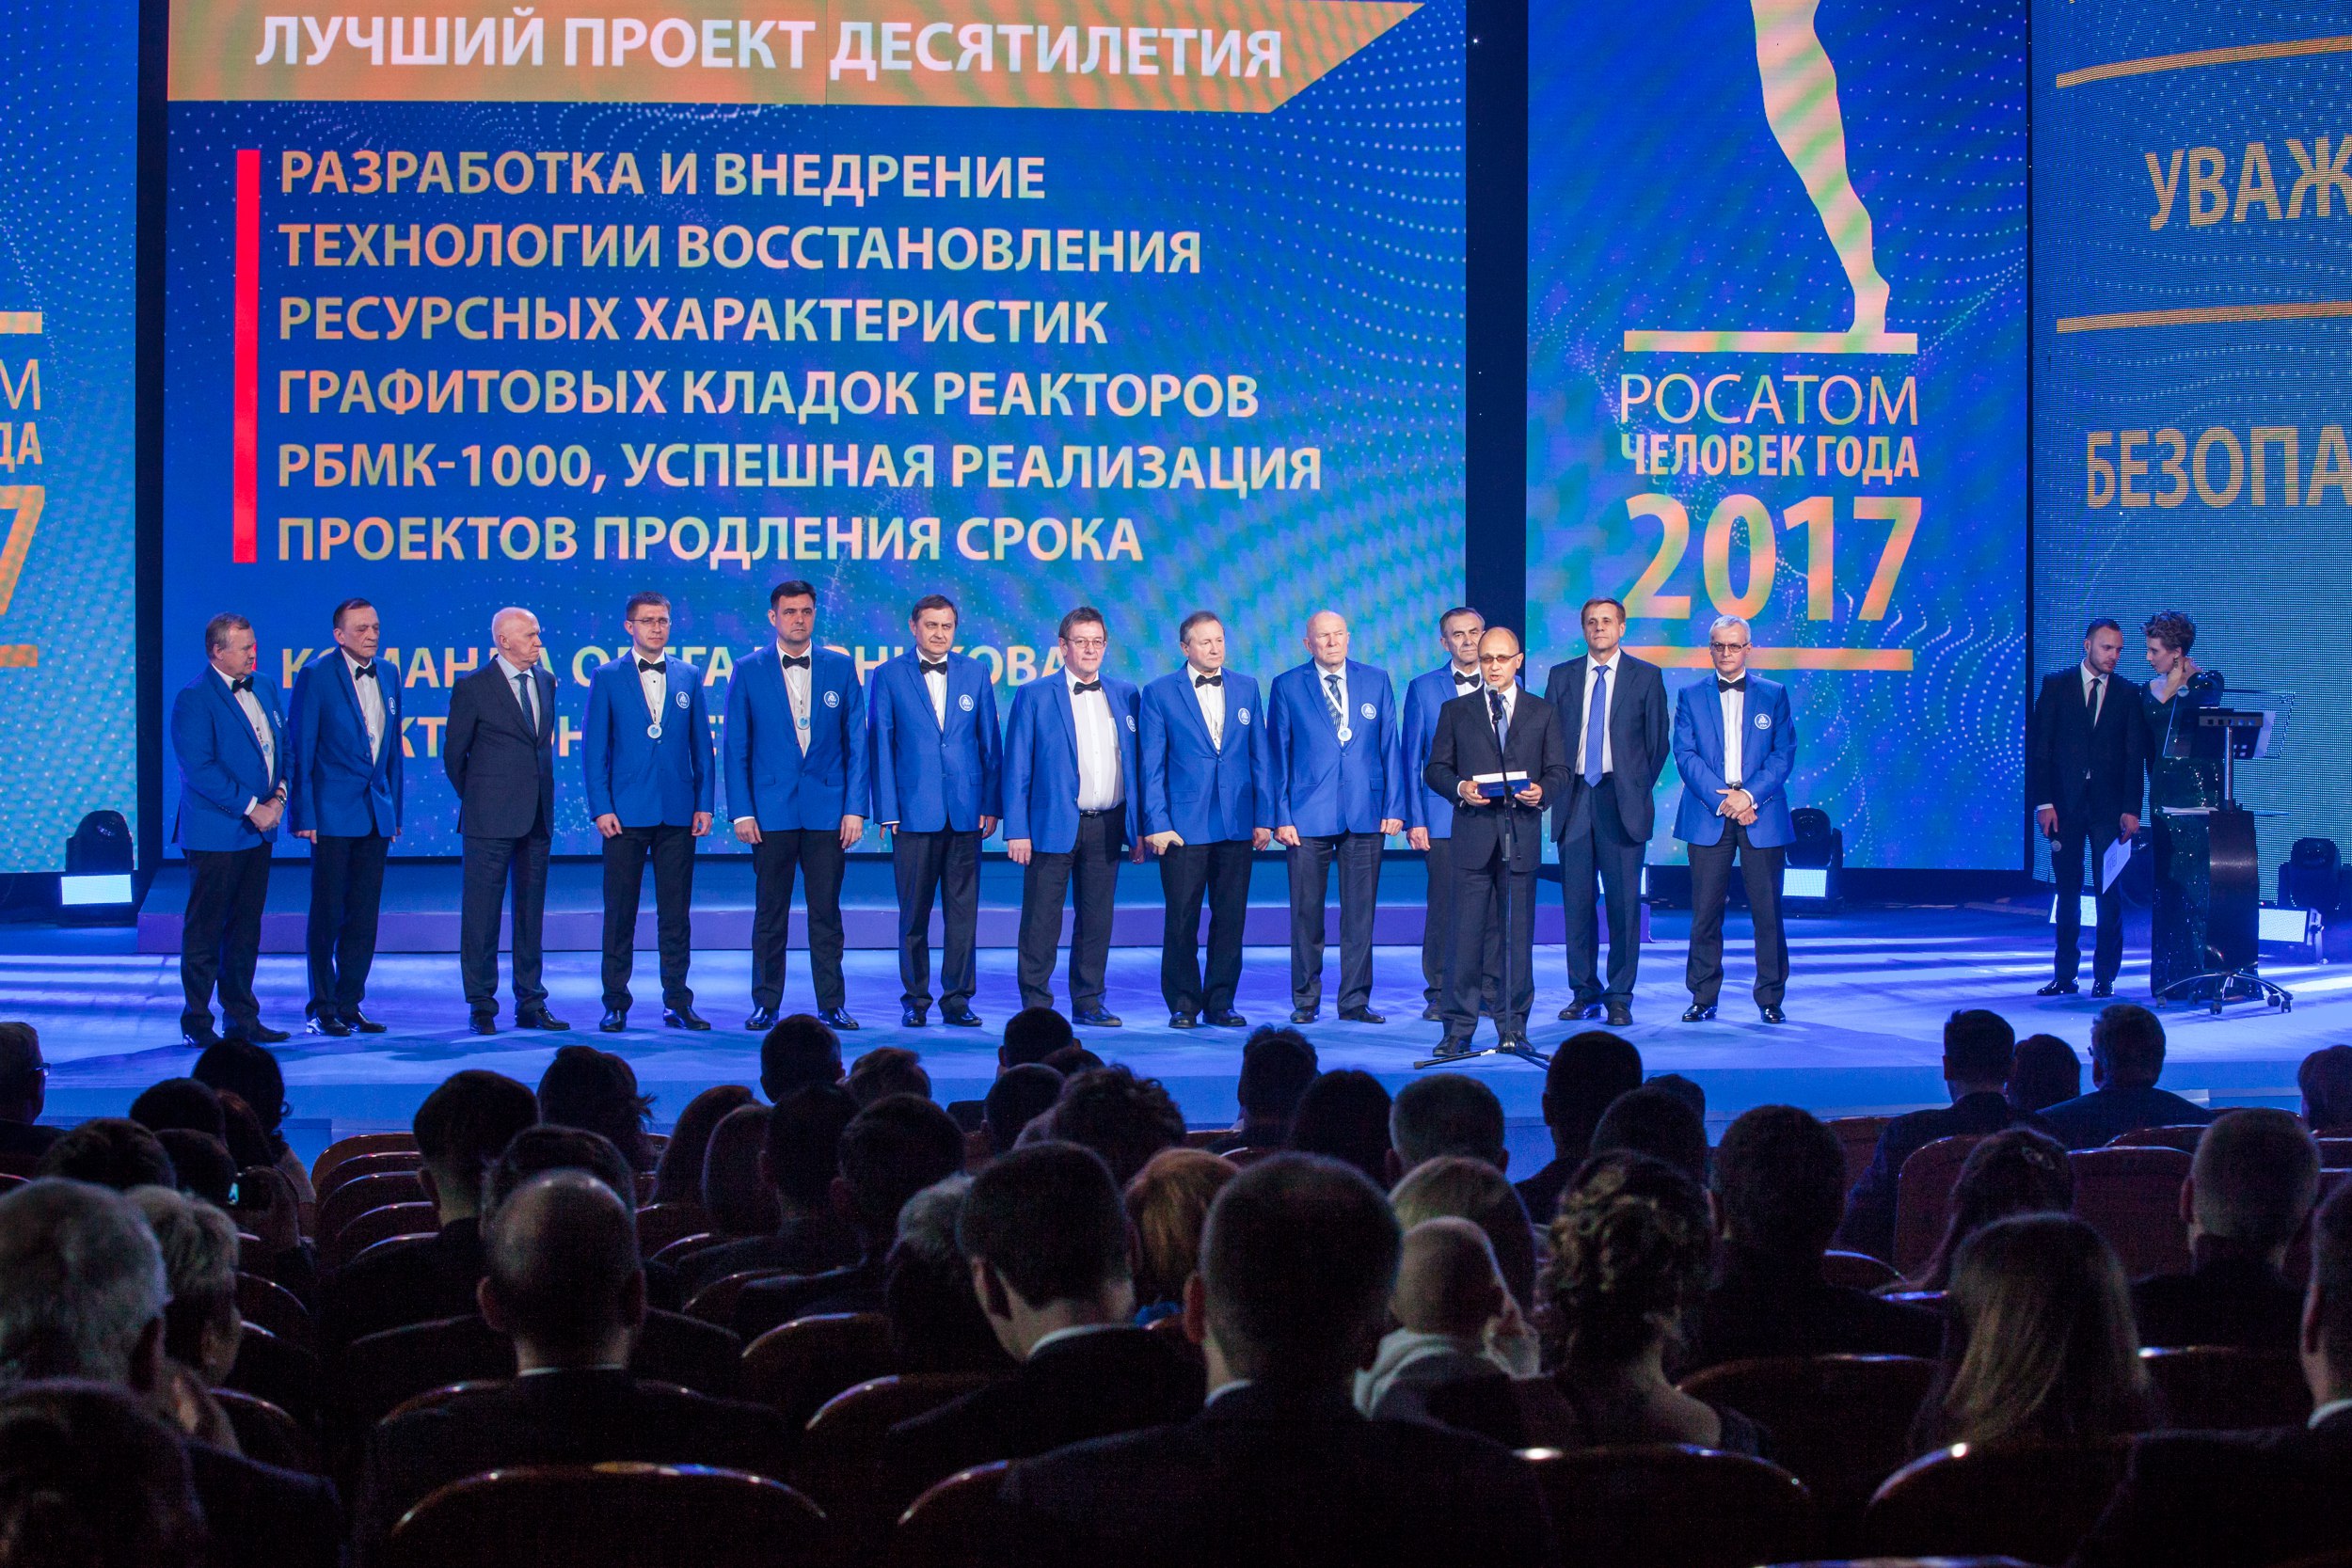 Работники Ленинградской АЭС завоевали три «золота» и два «серебра» в отраслевом конкурсе «Человек года Росатома 2017»